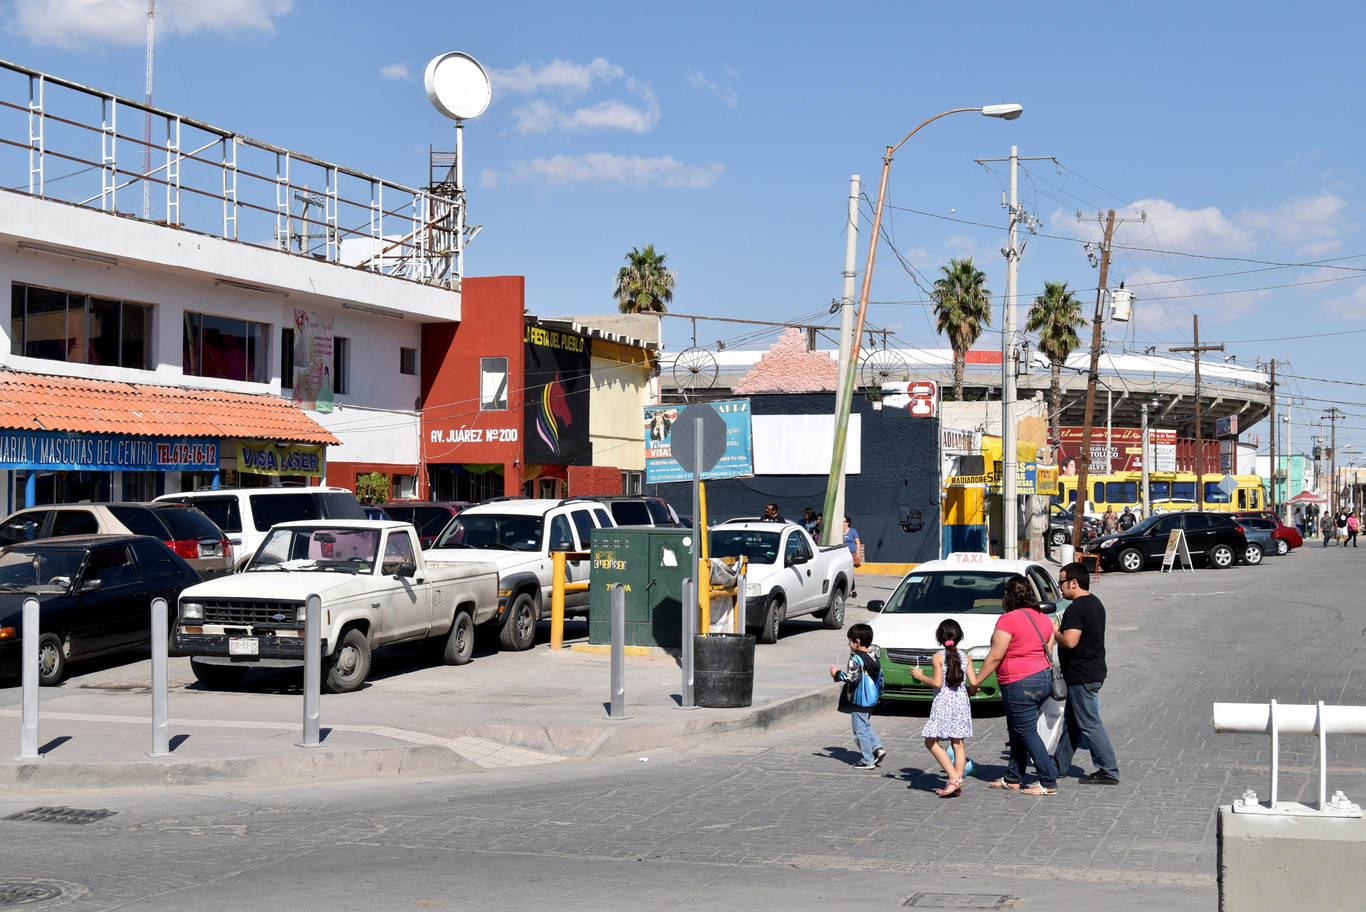 US15 0926 053 Ciudad Juarez, Mexico